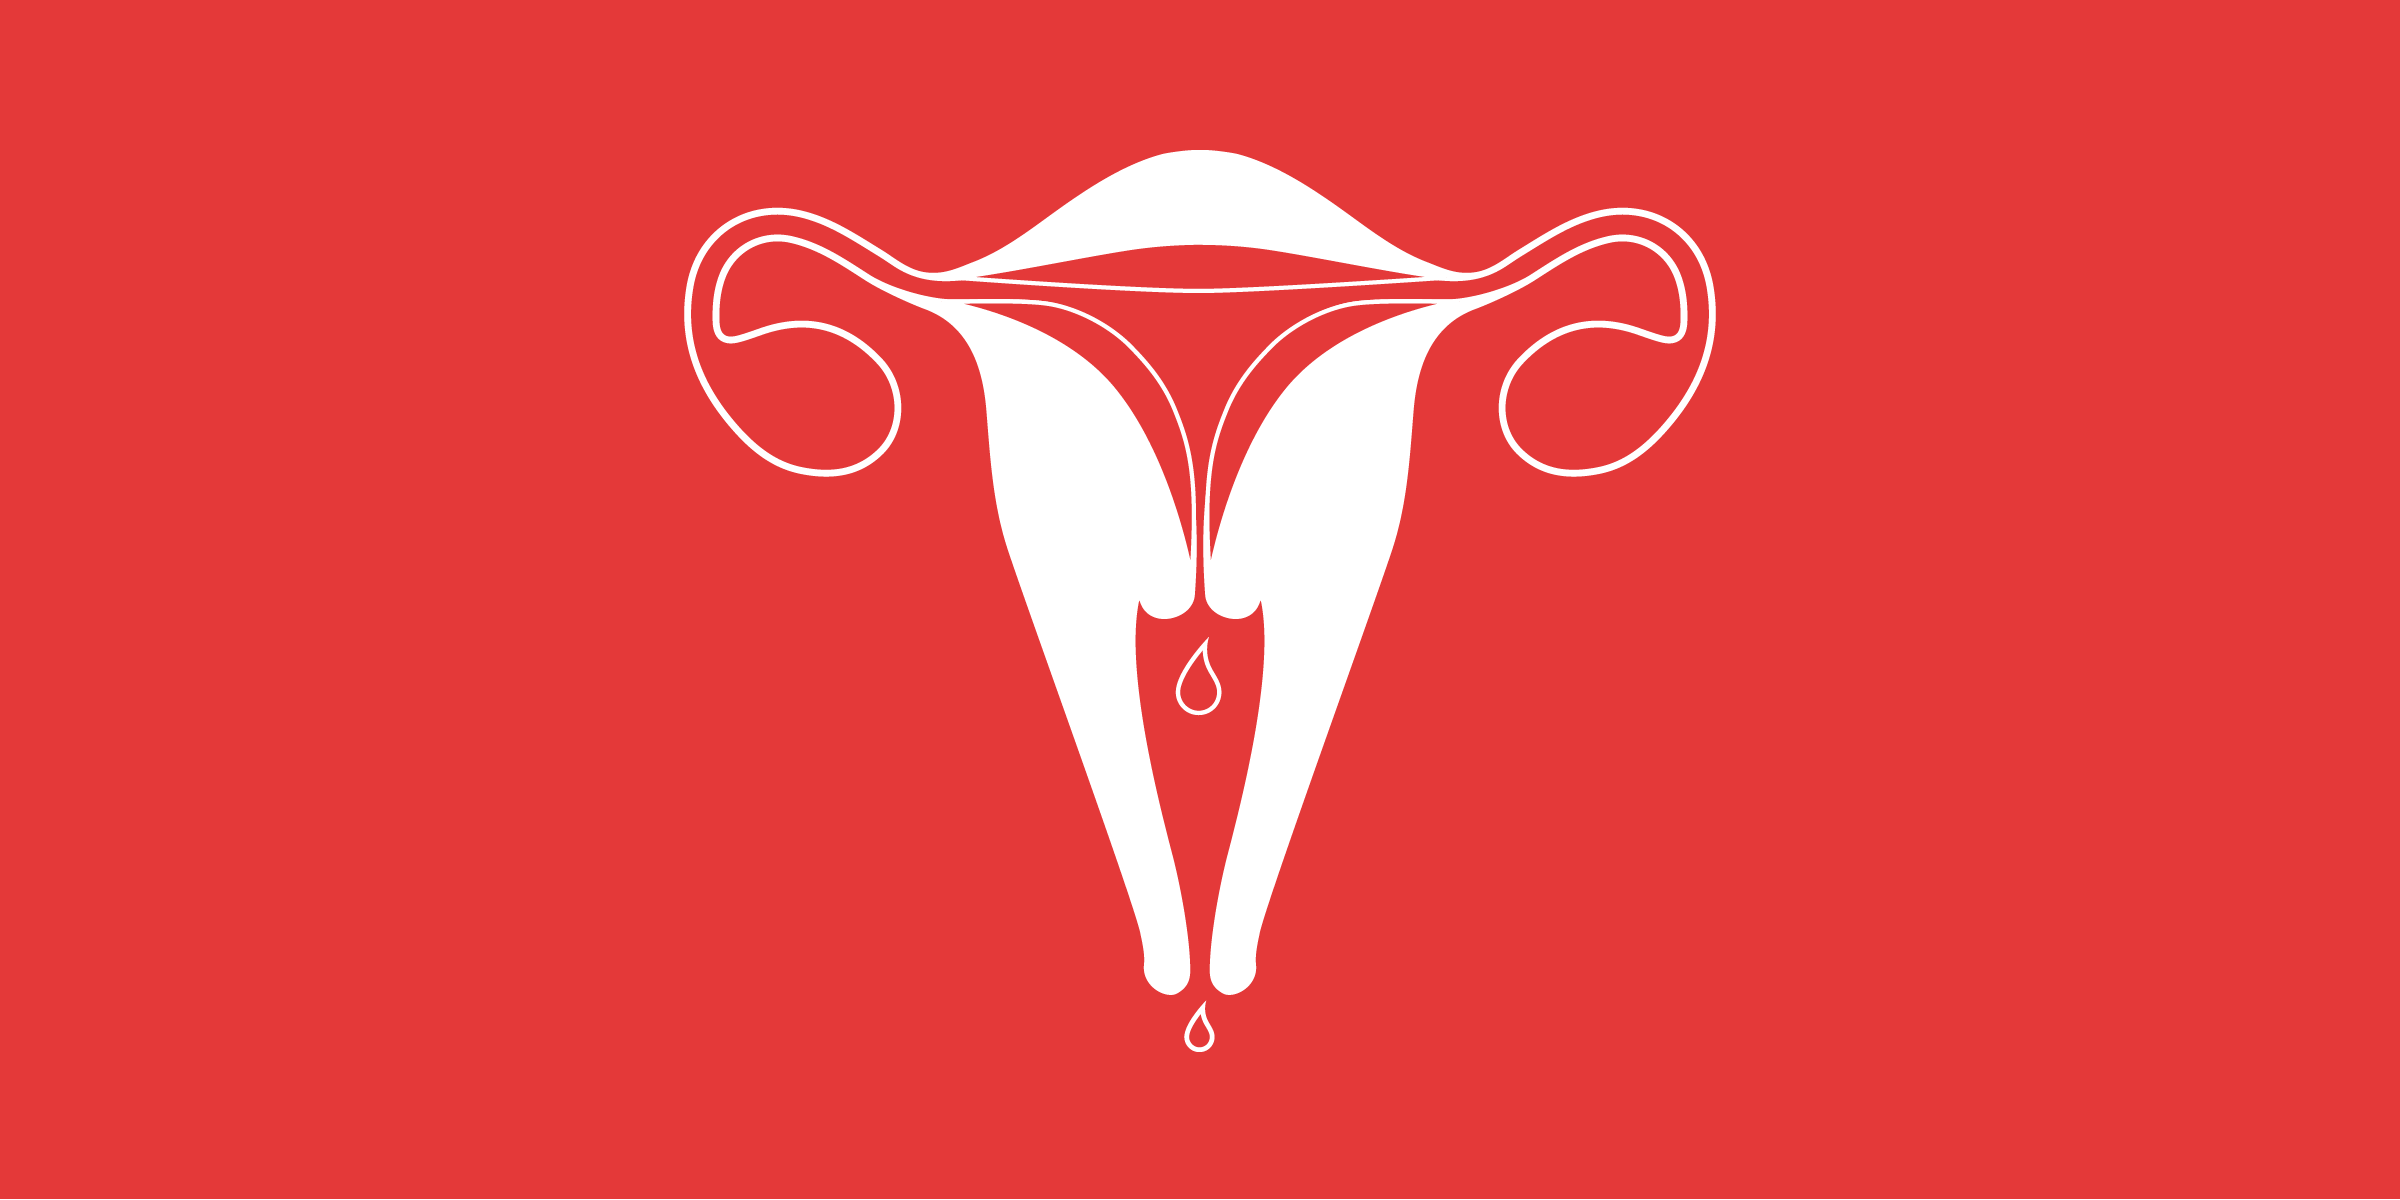 uterus illustration